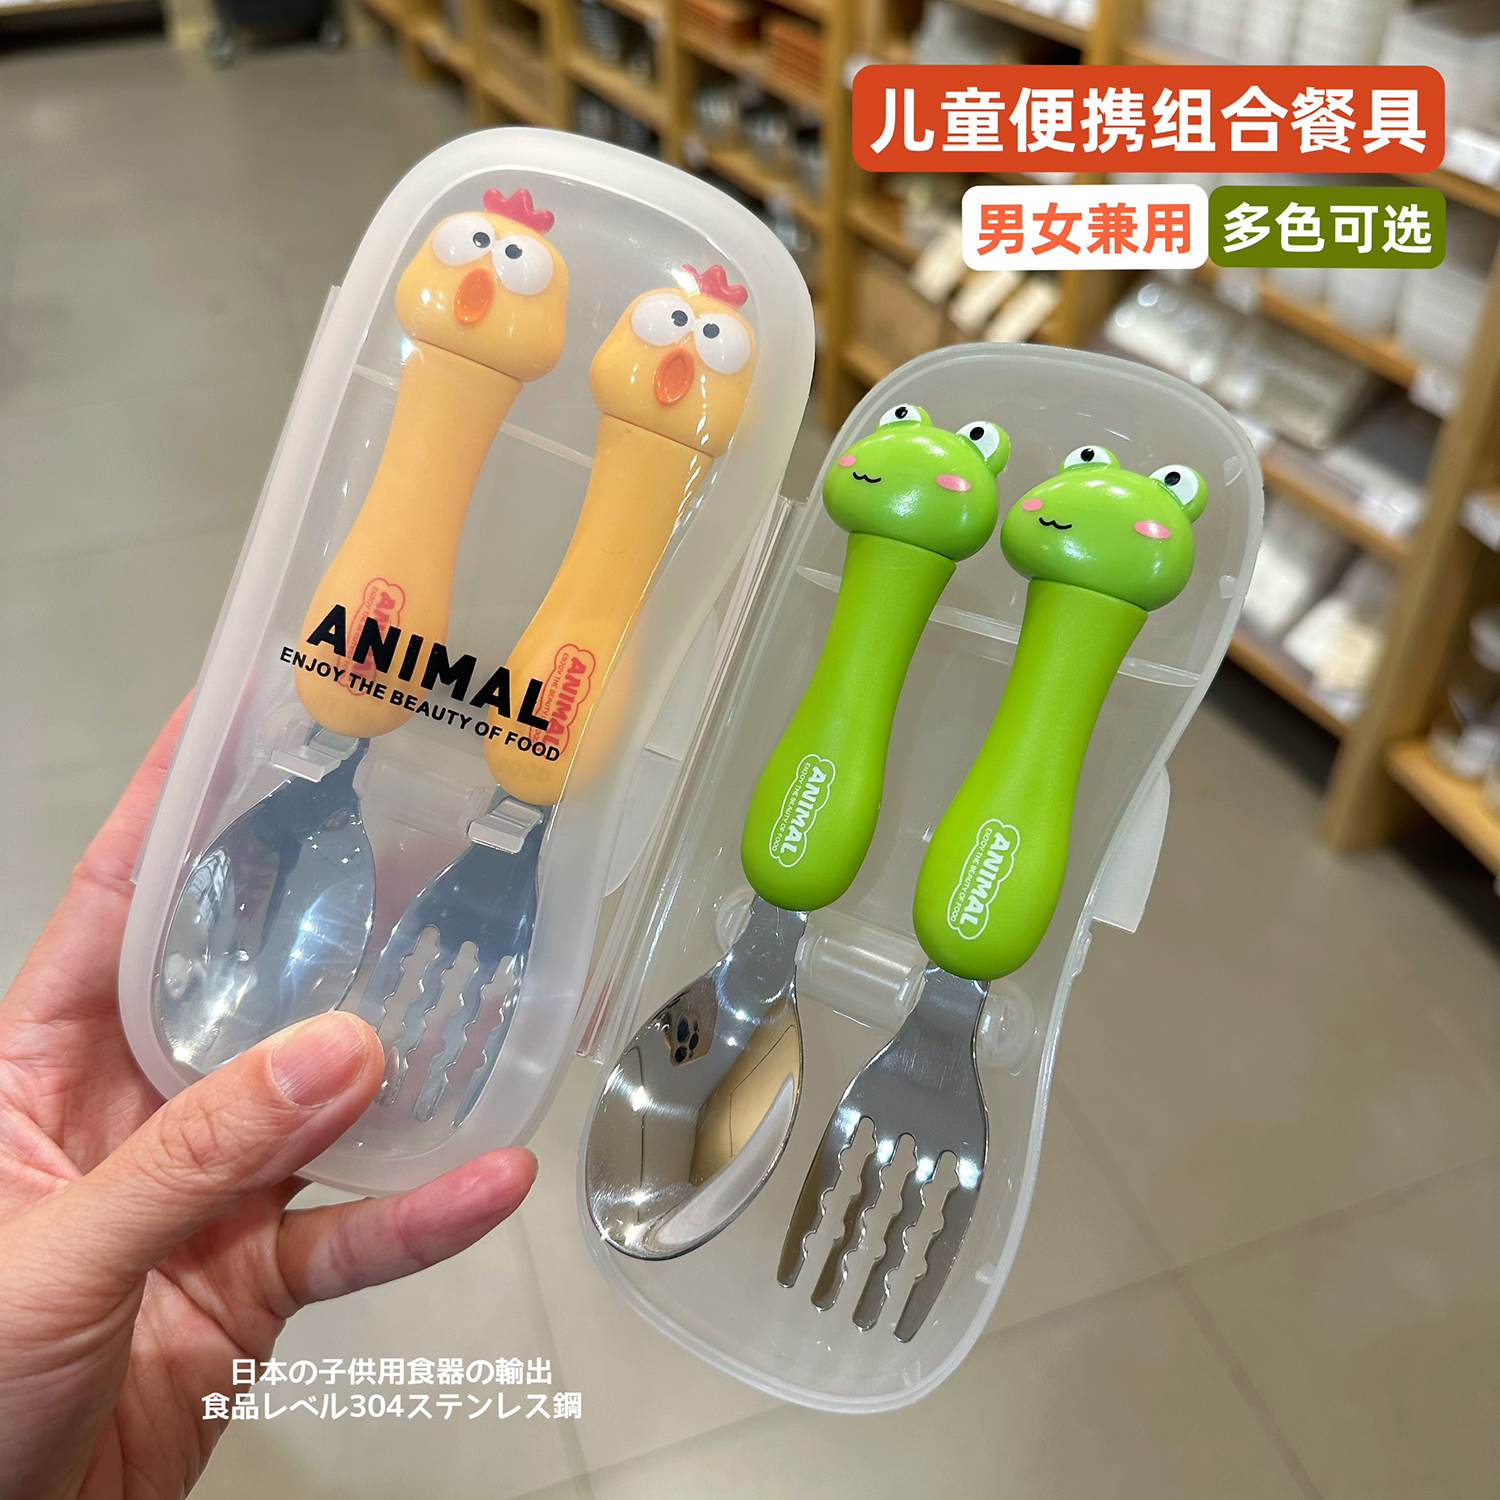 日本儿童勺子304不锈钢家用餐具创意可爱卡通便携式婴儿宝宝吃饭